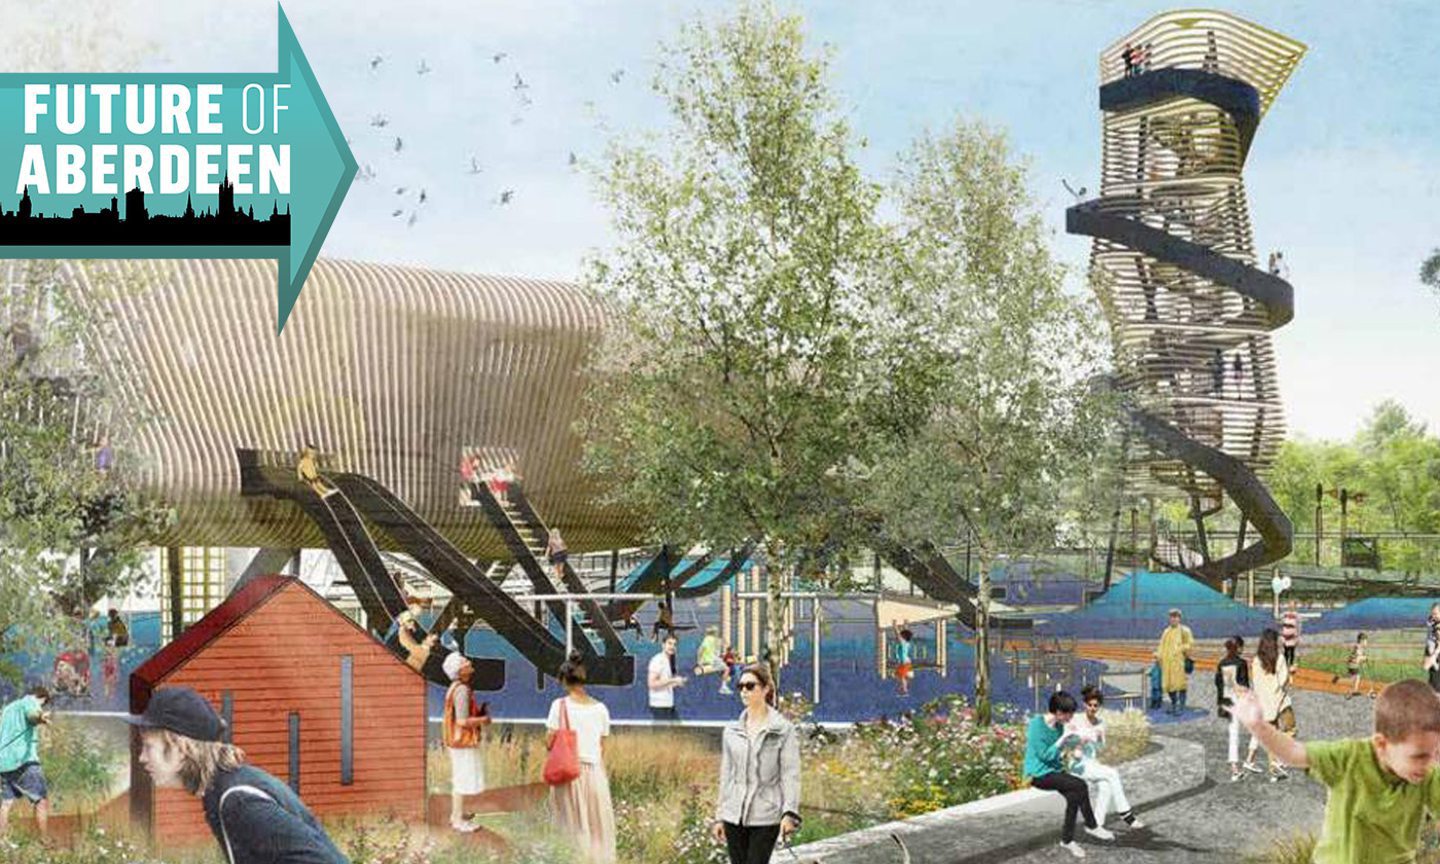 Aberdeen beach playpark plans progress as council learns how hundreds of kids shaped design